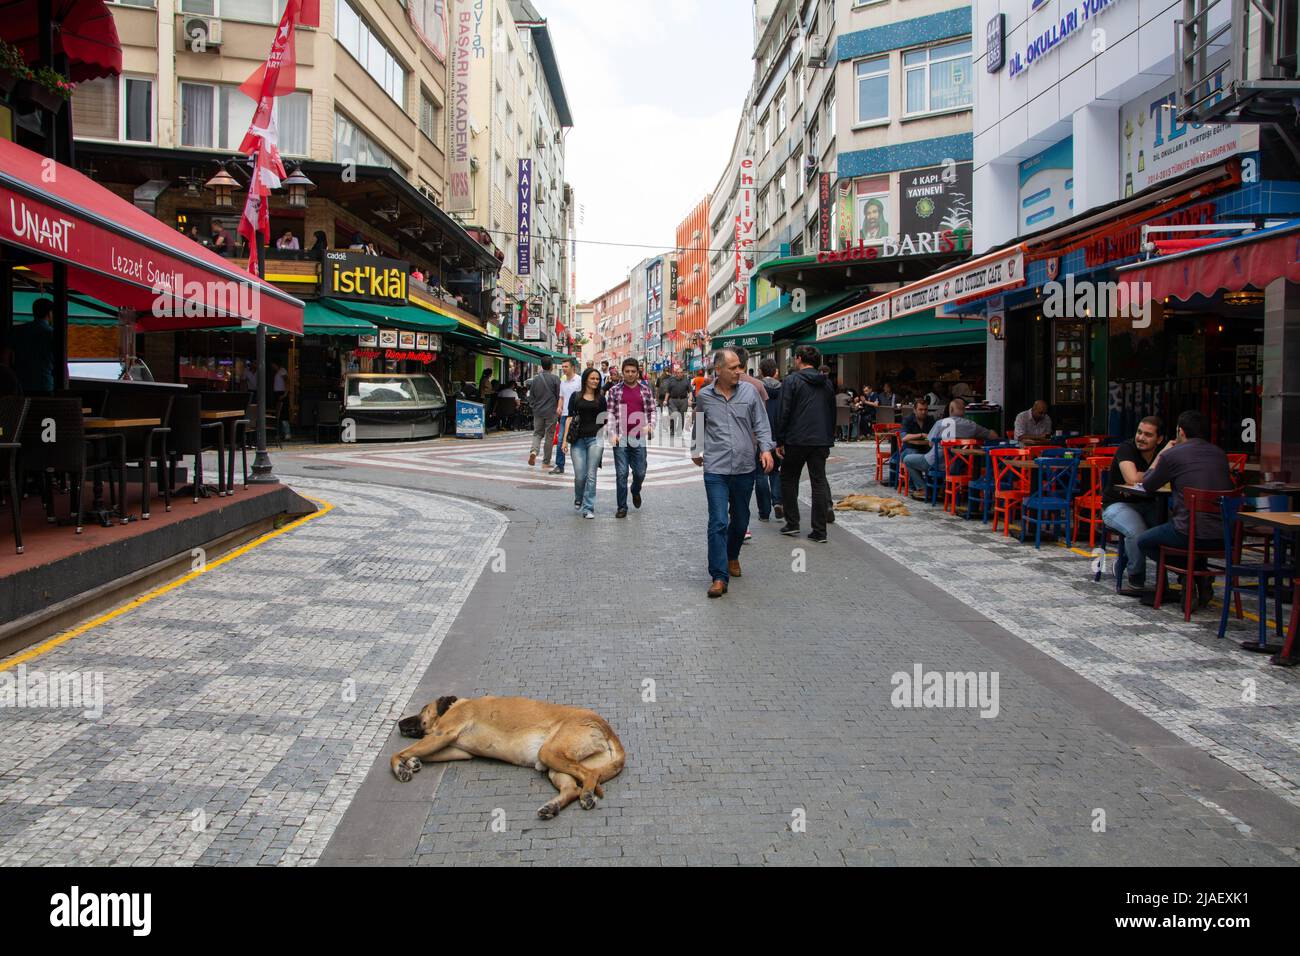 Straßenszene in der Innenstadt Istanbuls mit Menschen, die ihren täglichen Geschäftsbetrieb machen, während Hunde sich hinlegen und sich entspannen. Stockfoto